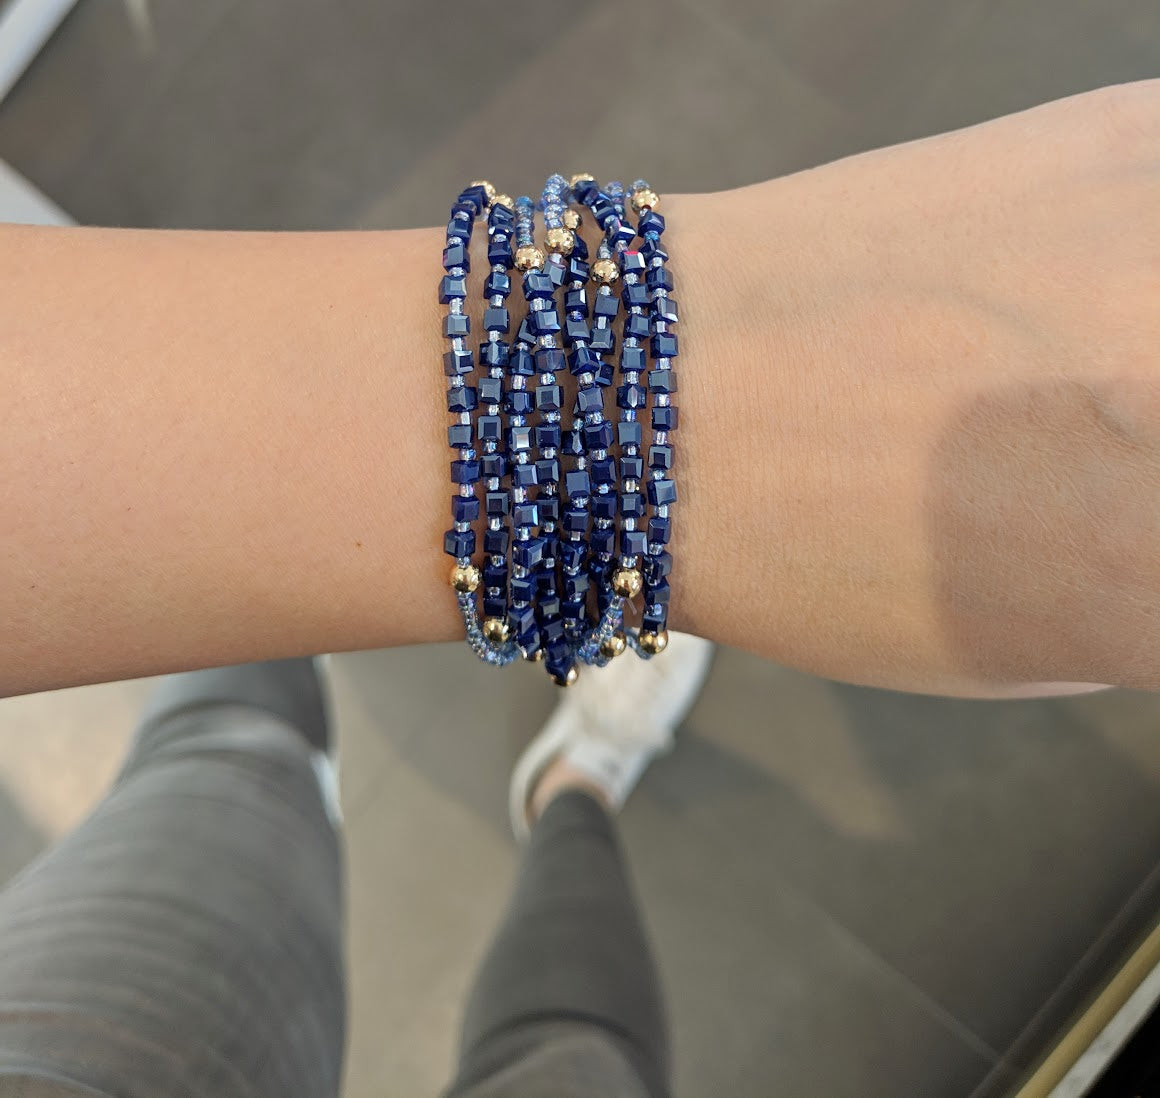 Like Jewellery - Armband Zami Blue